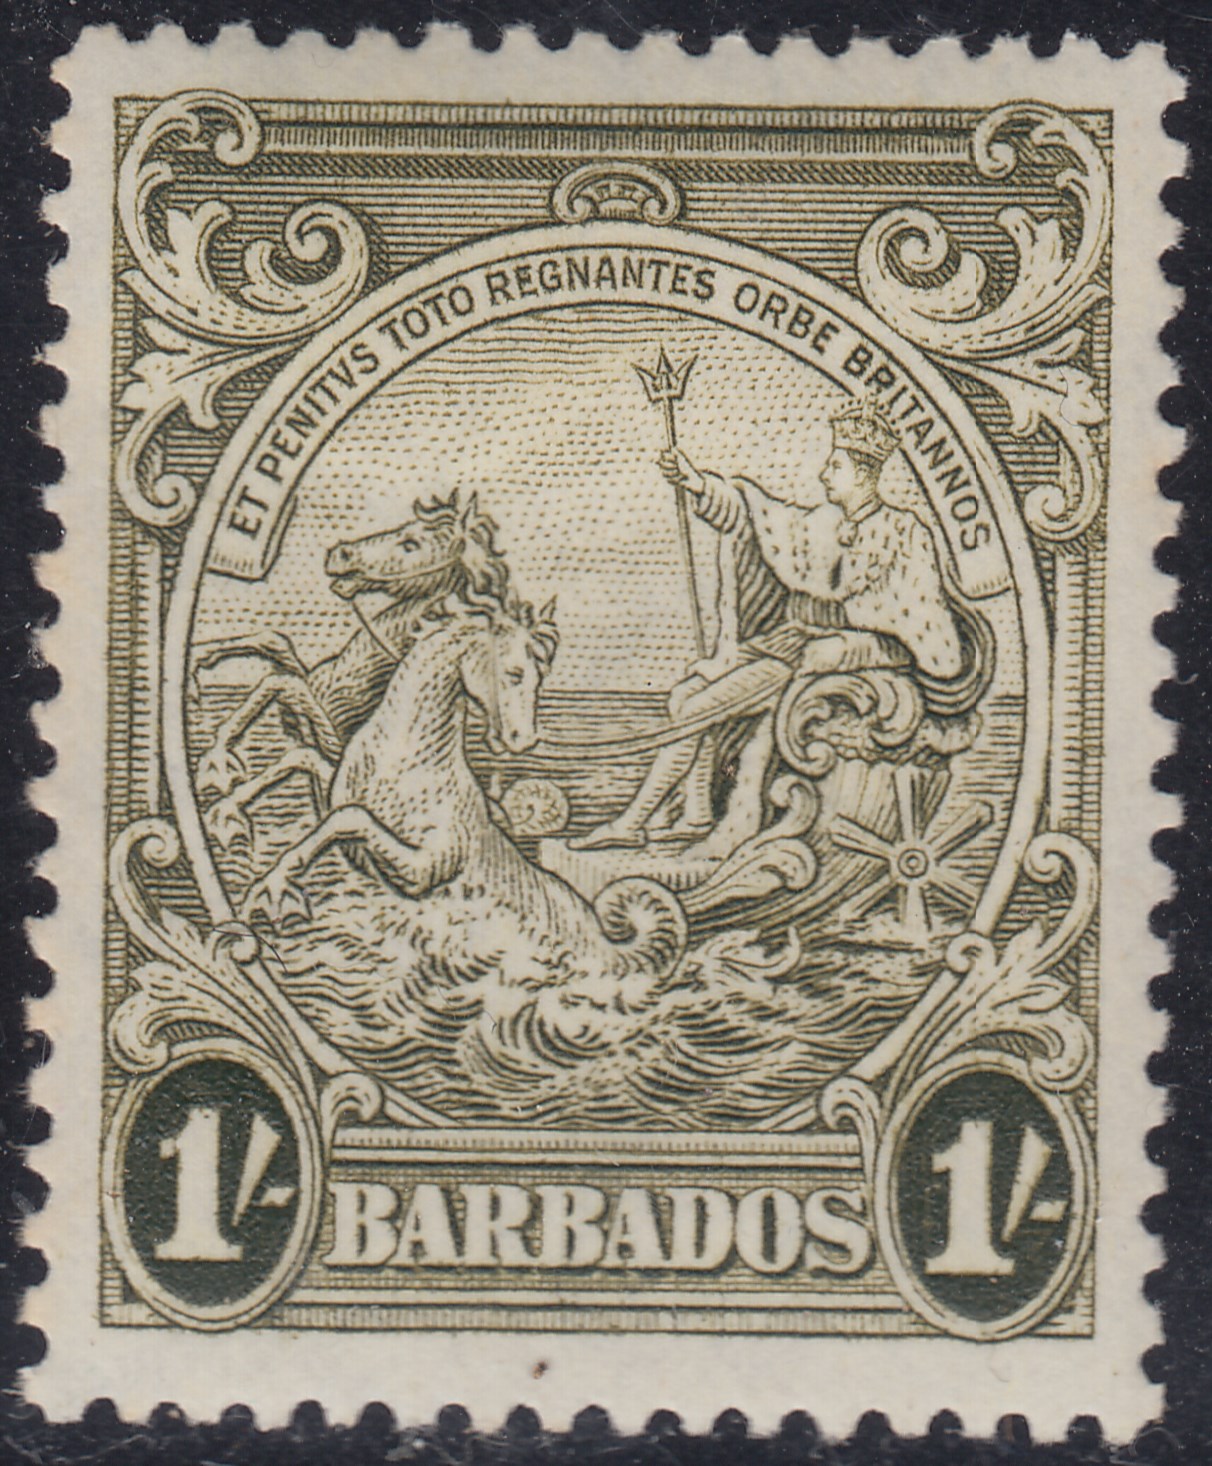 Дам гватемалу и два барбадоса. Барбадос марка Почтовая. Марки Гватемалы и Барбадоса почтовые. Марка корабль Барбадос 1933. Почтовая марка Барбадос 1.